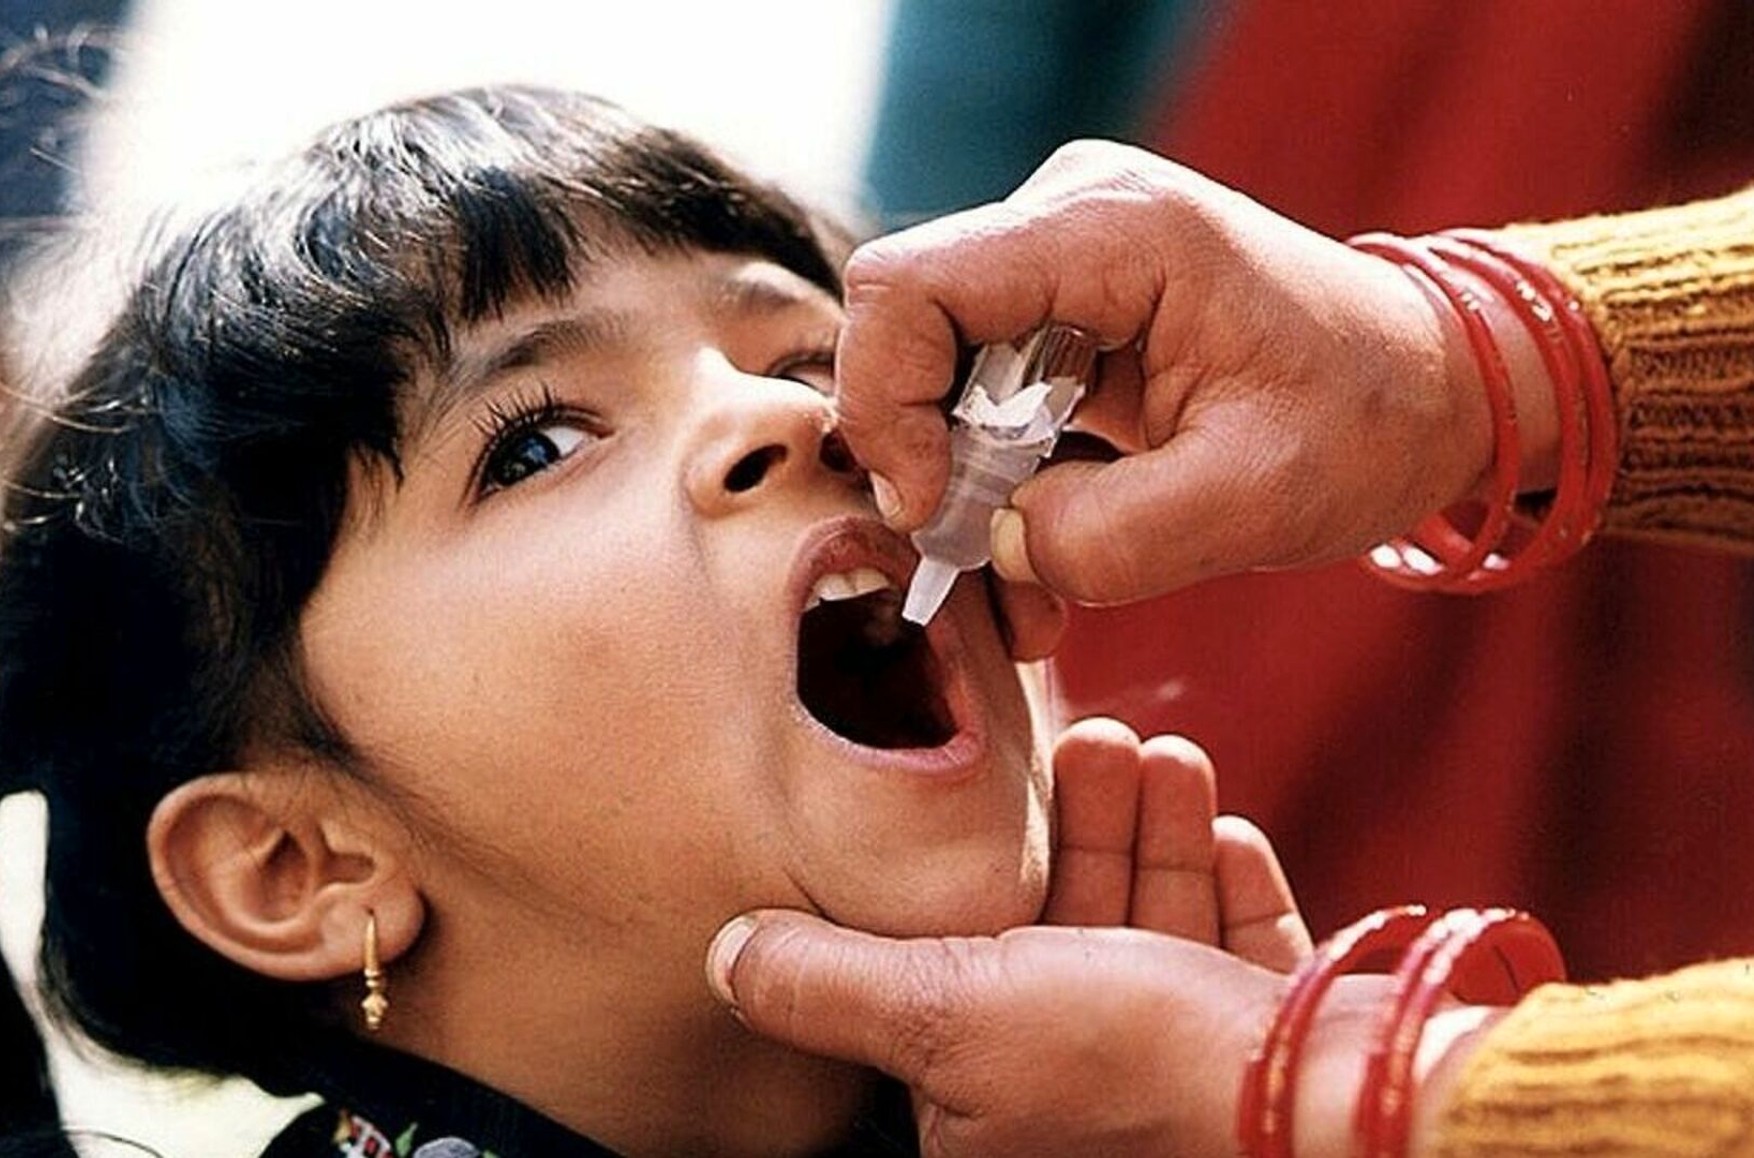 В Ингушетии вспышка полиомиелита. Родители отказываются от прививок и требуют ввести карантин, власти скрывают проблему